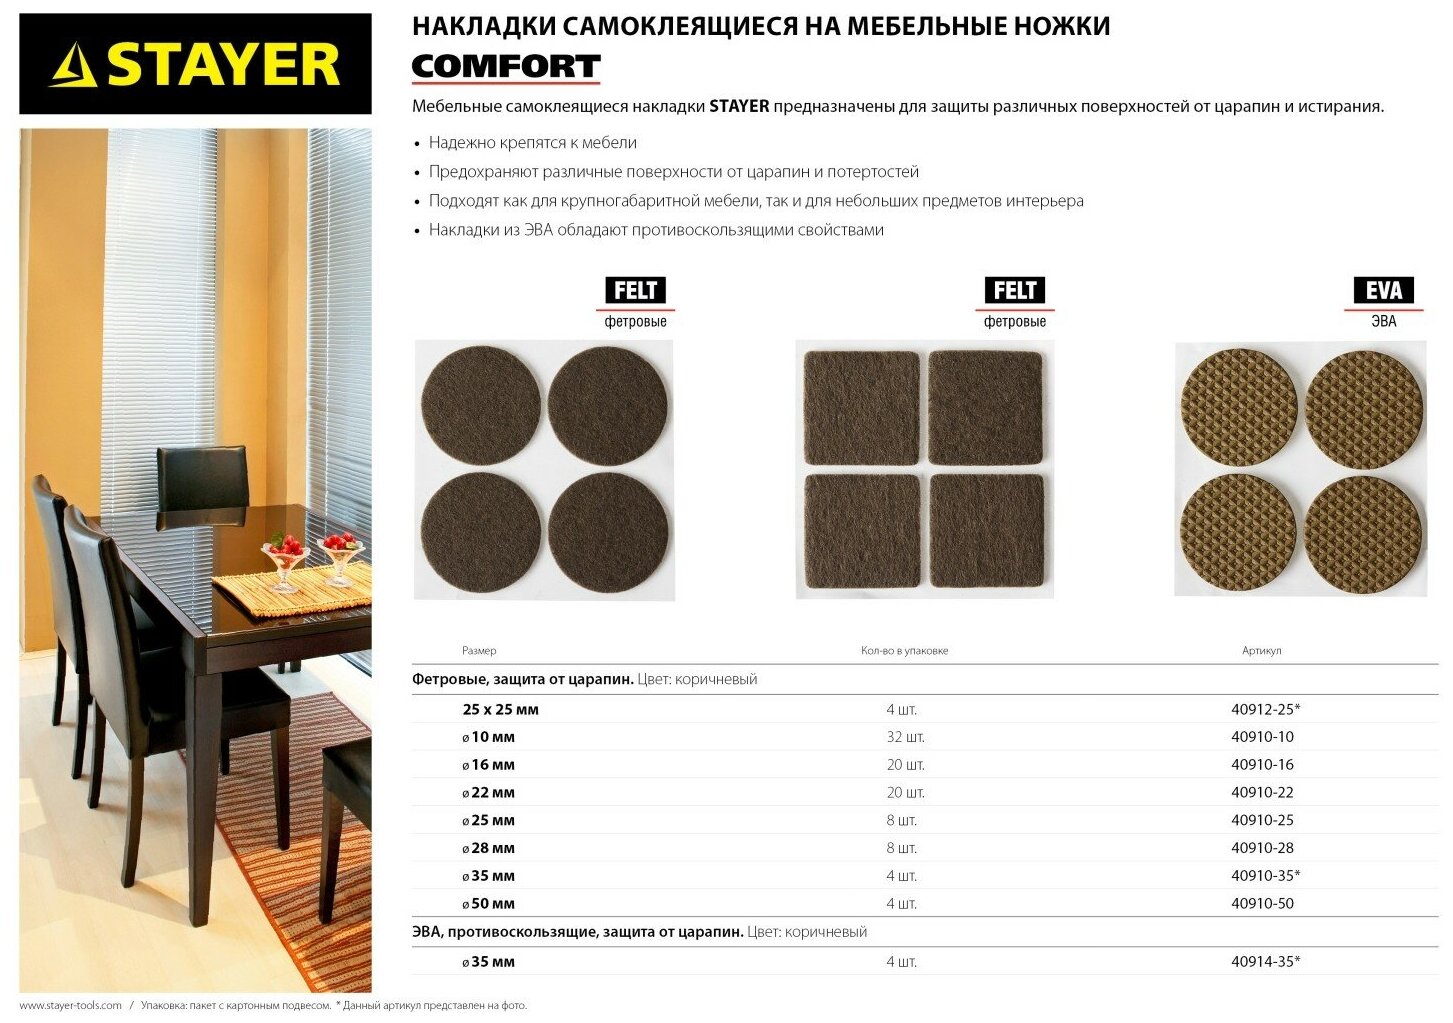 STAYER d 22 мм, самоклеящиеся, фетровые, 20 шт, коричневые, мебельные накладки (40910-22)